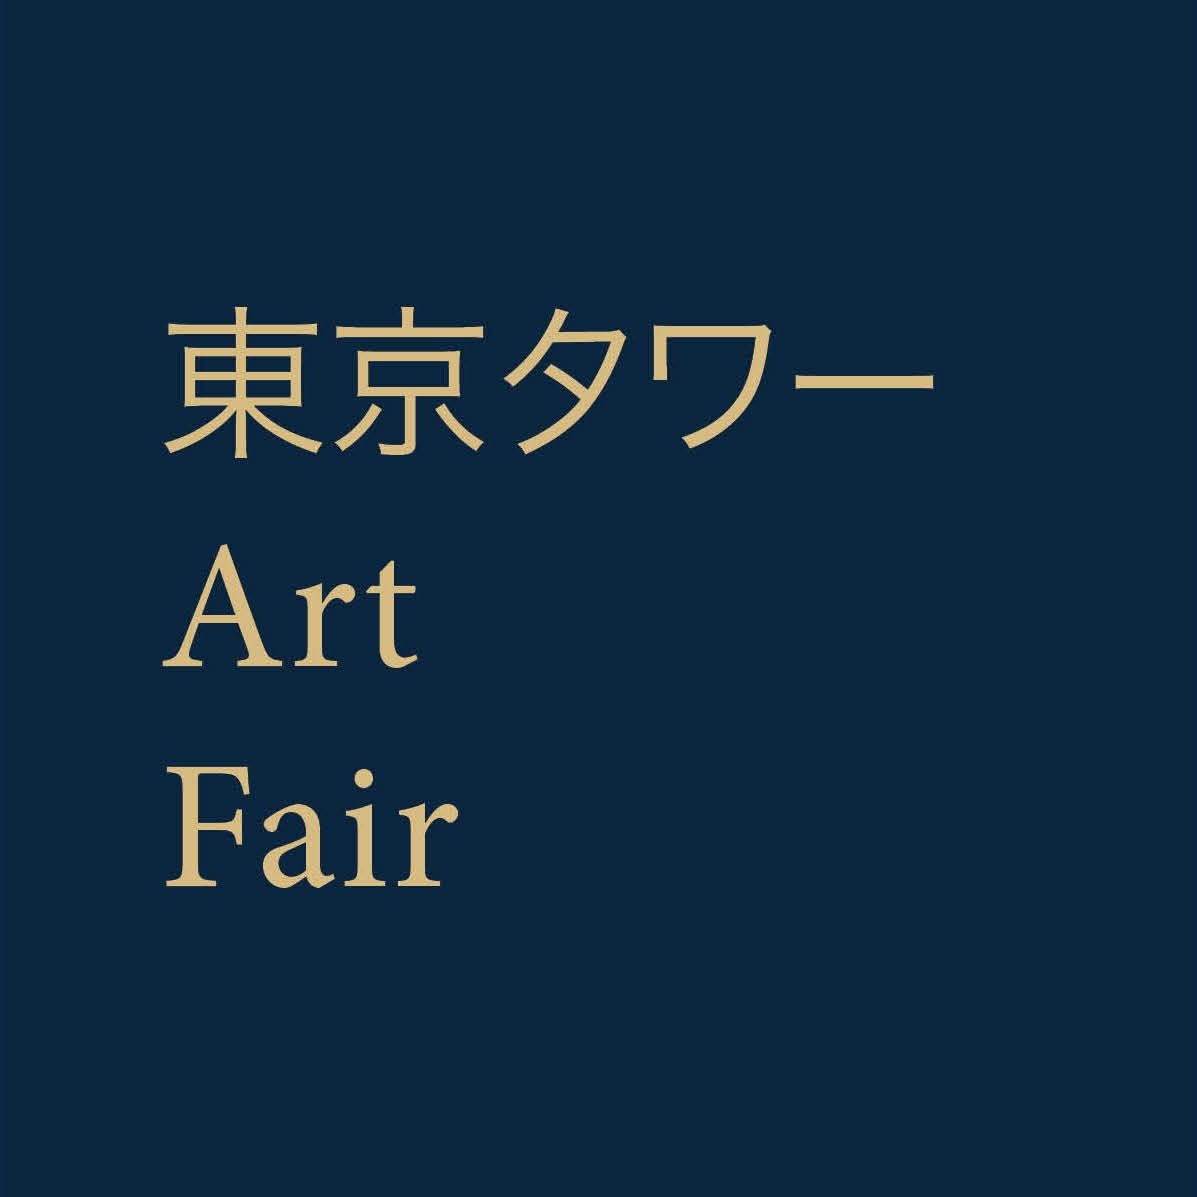 Tokyo Tower Art Fair